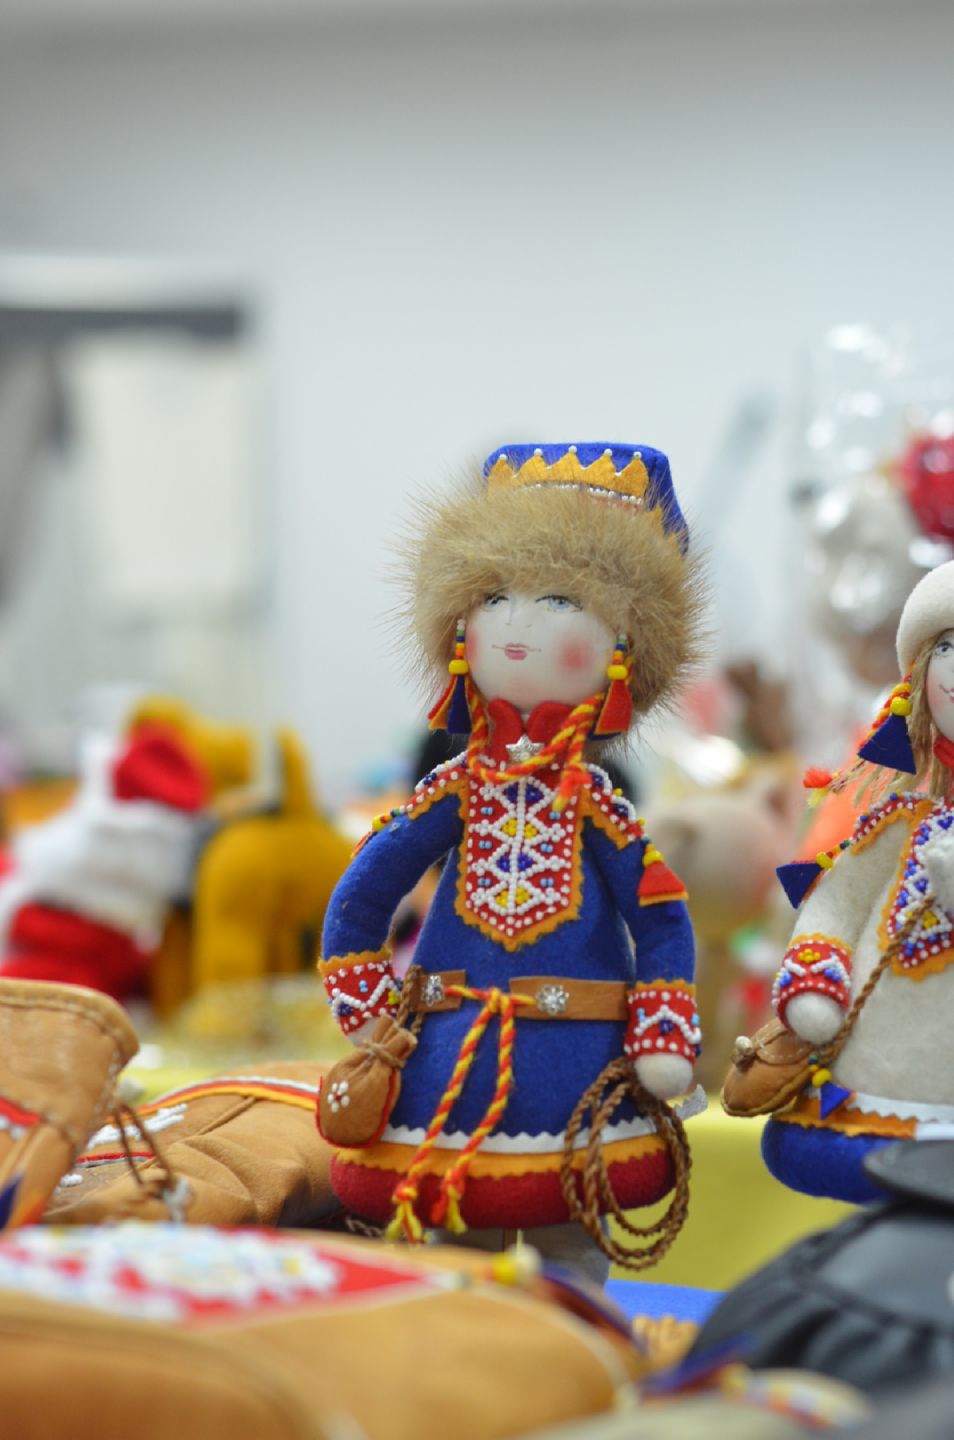 Областная выставка куклы «Маленький народец водит хороводец» 4.11-6.11